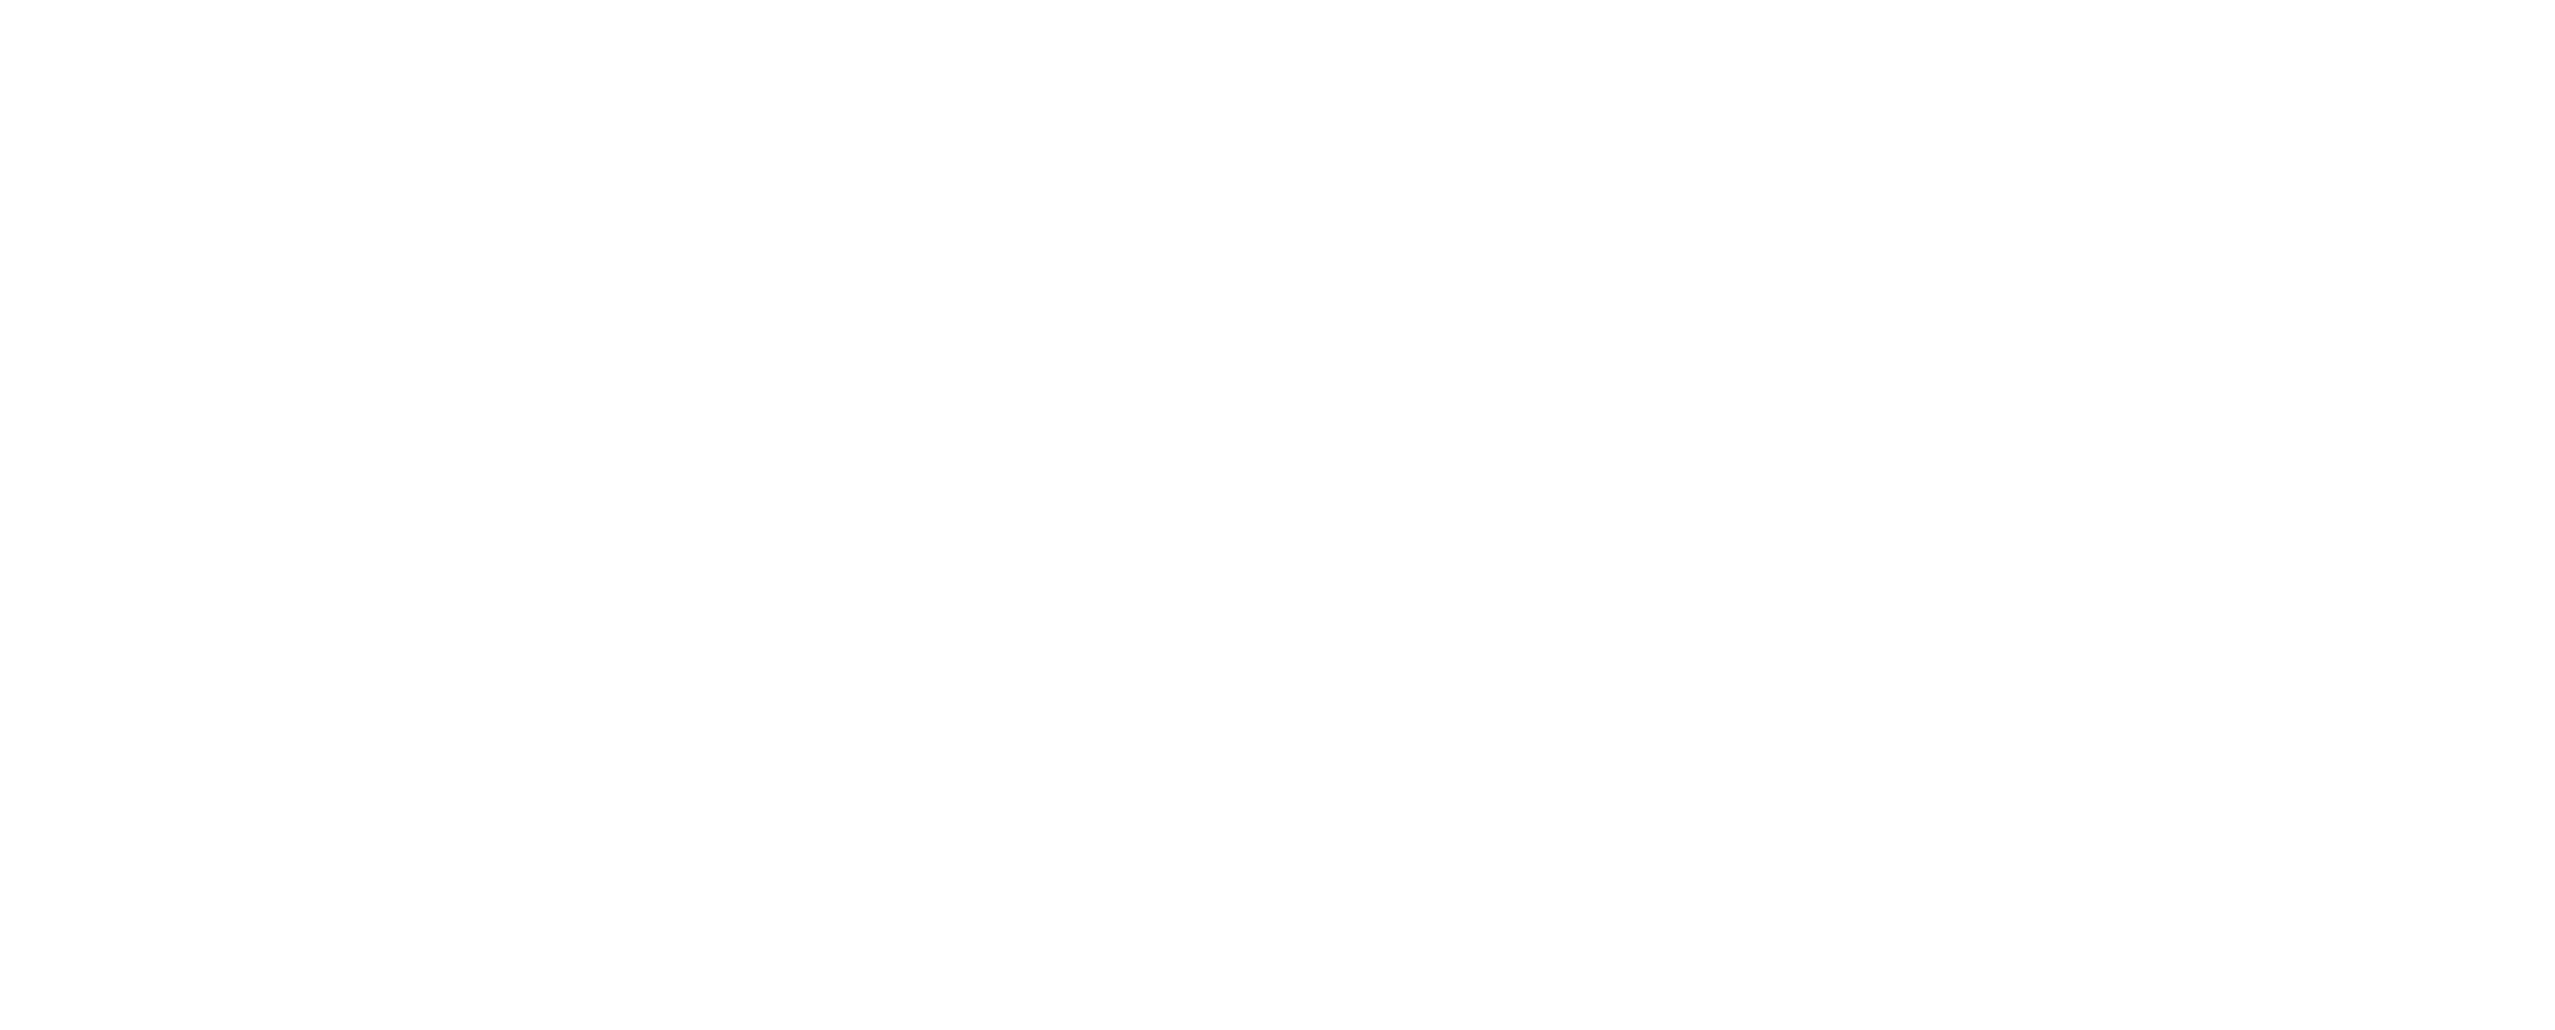 BuildingsIOT-logo-2020-white